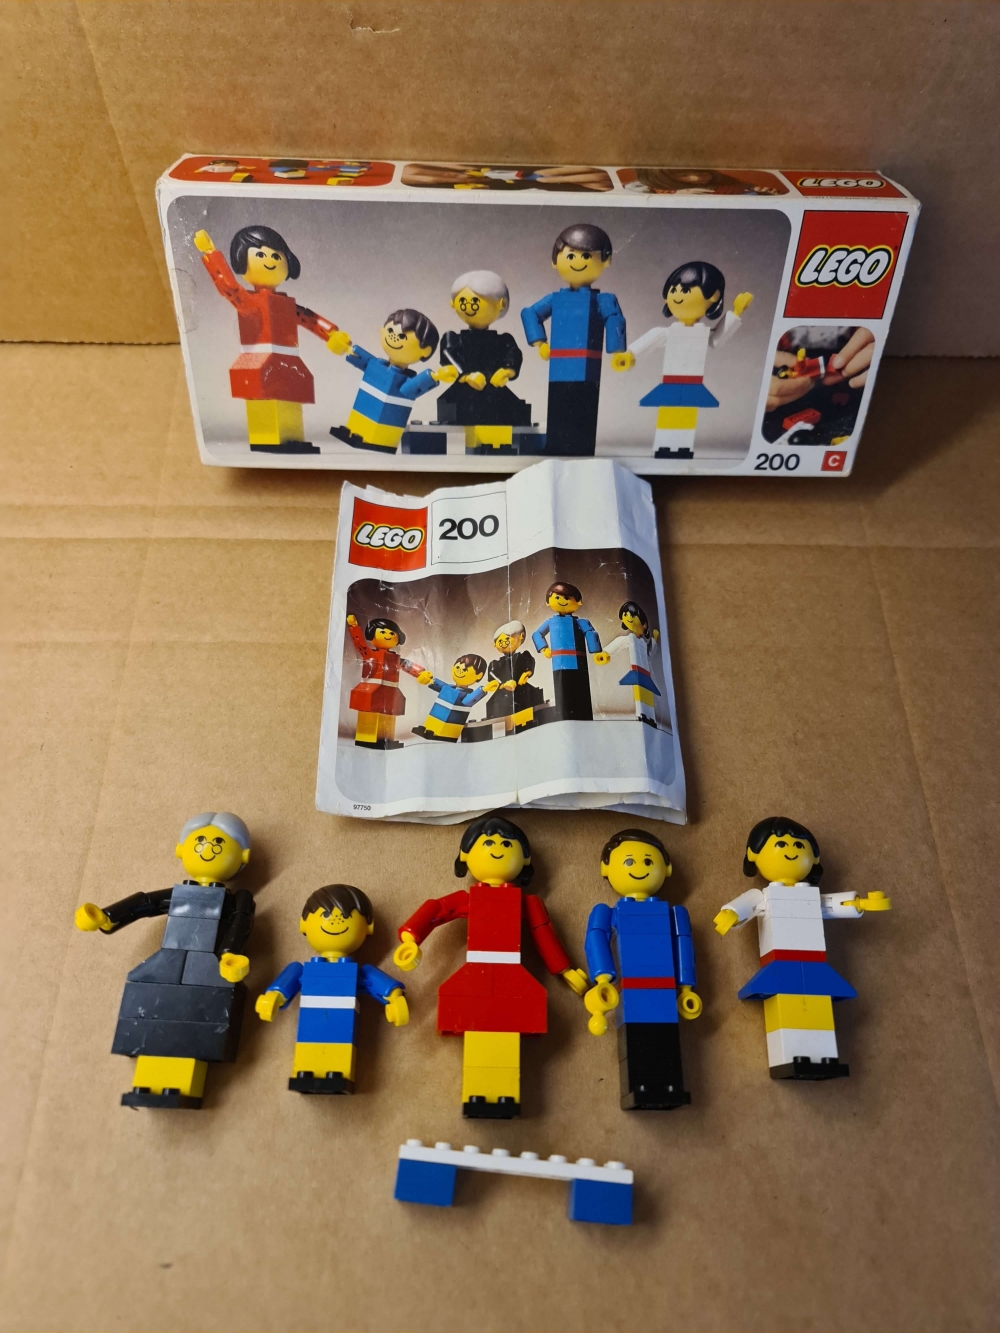 Sett 200 fra Lego Building Sets With People serien.
Fint sett. Komplett med manual og eske.